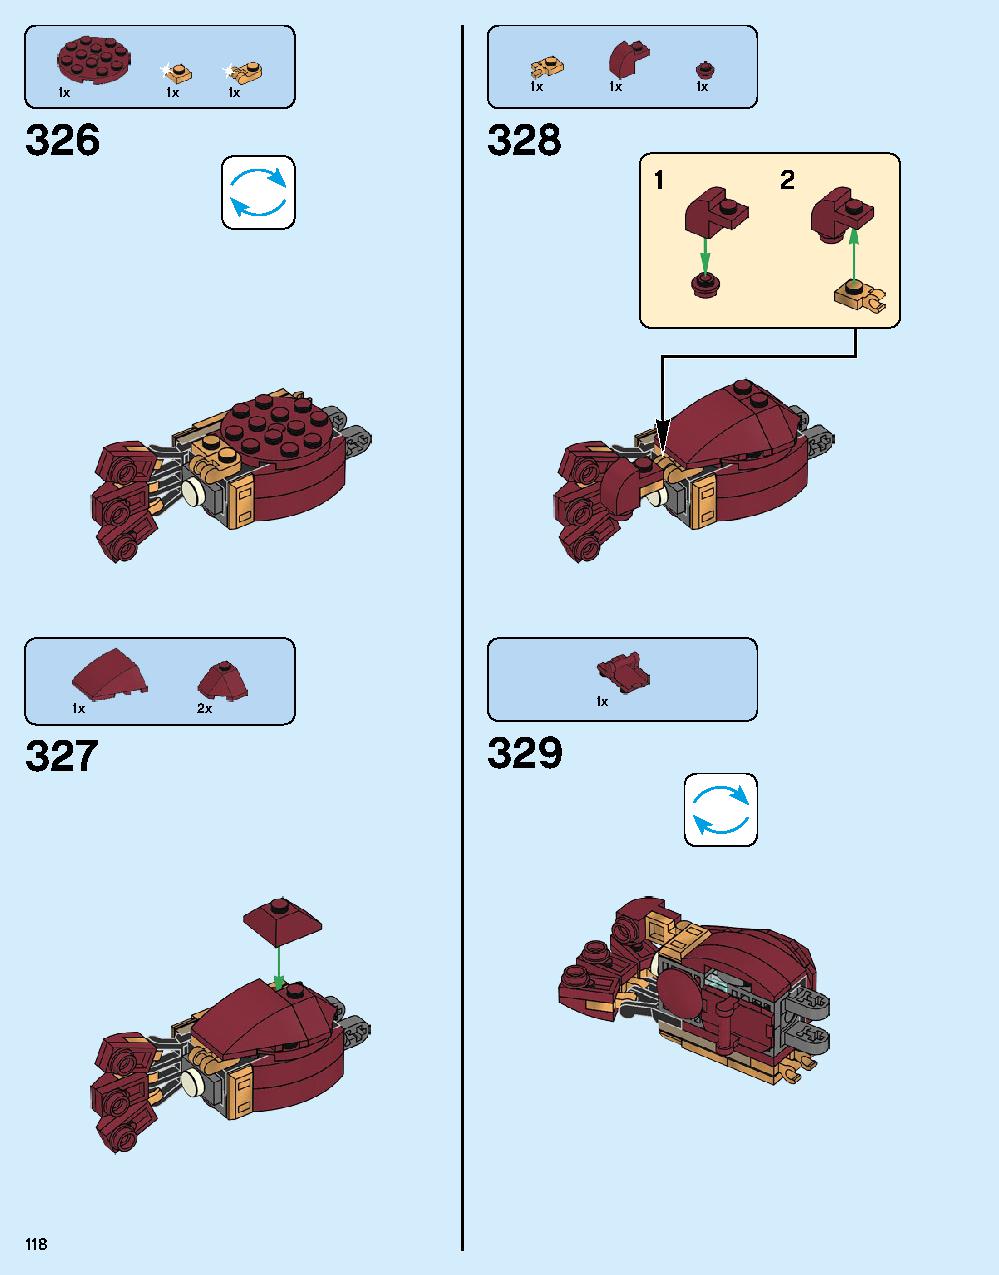 ハルクバスター：ウルトロン・エディション 76105 レゴの商品情報 レゴの説明書・組立方法 118 page